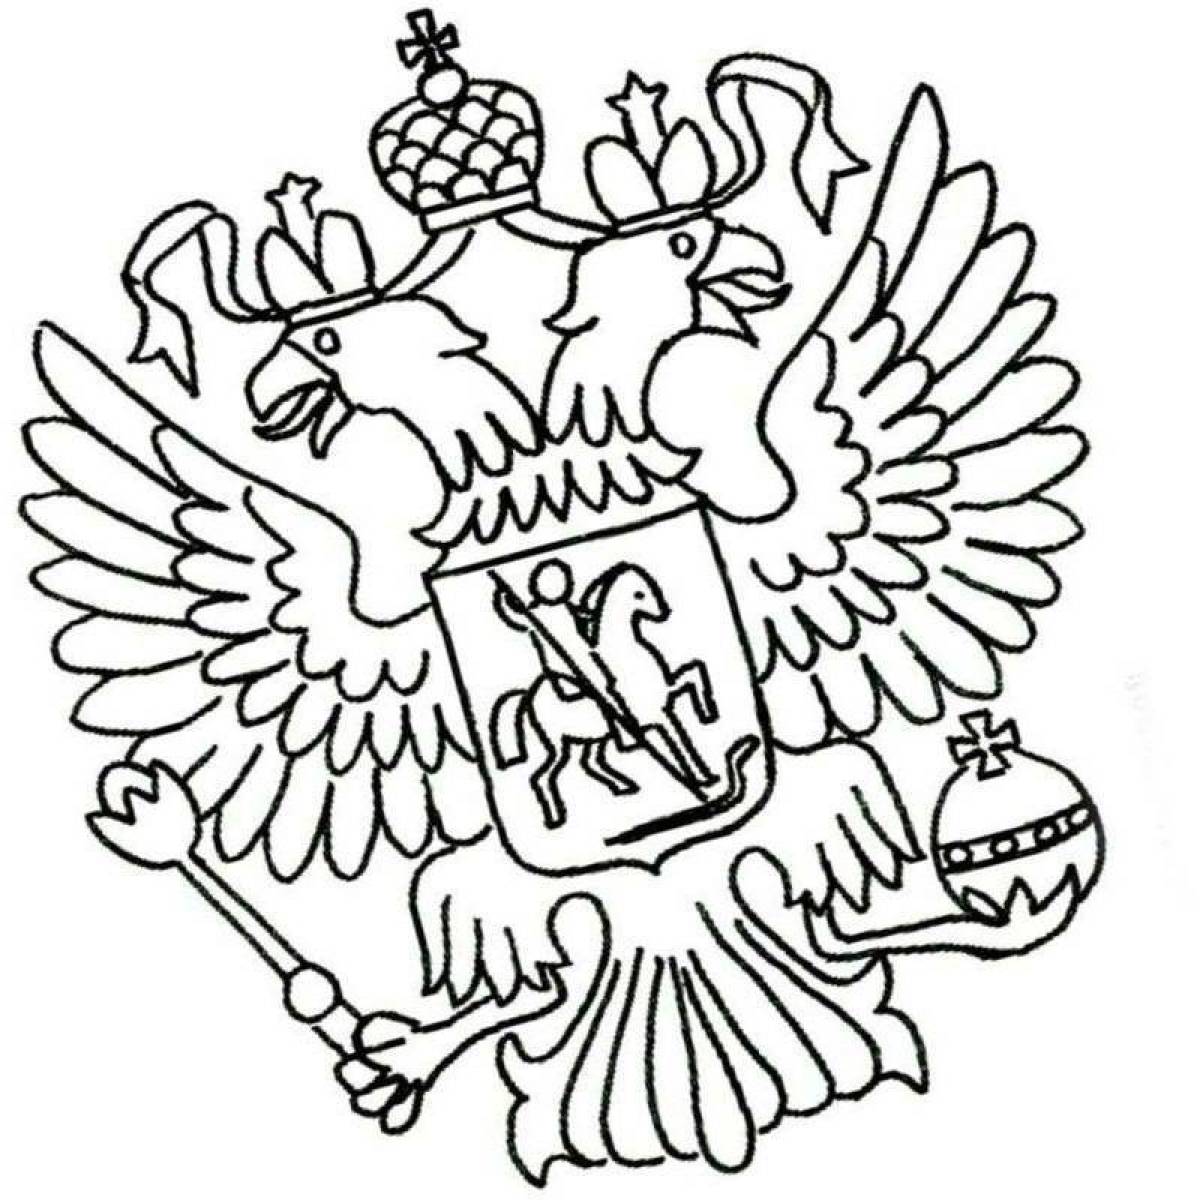 Герб москвы рисунок детский